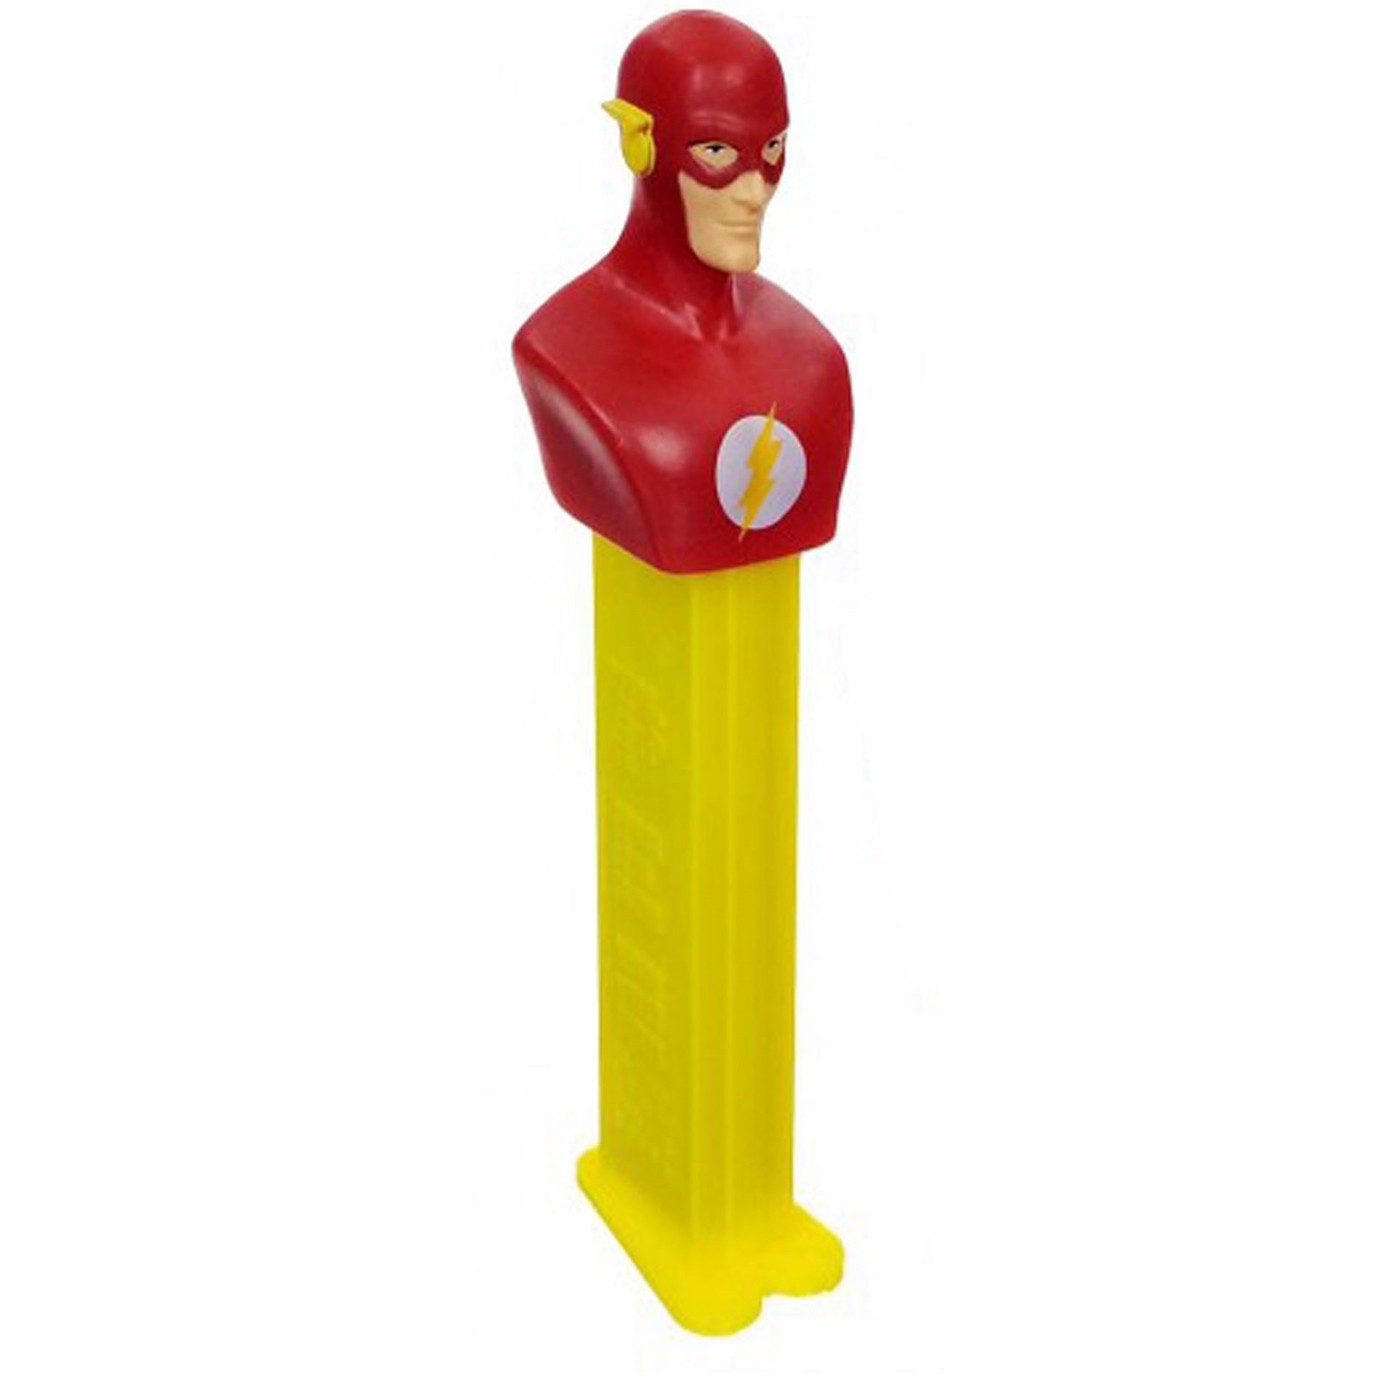 Flash Pez Dispenser